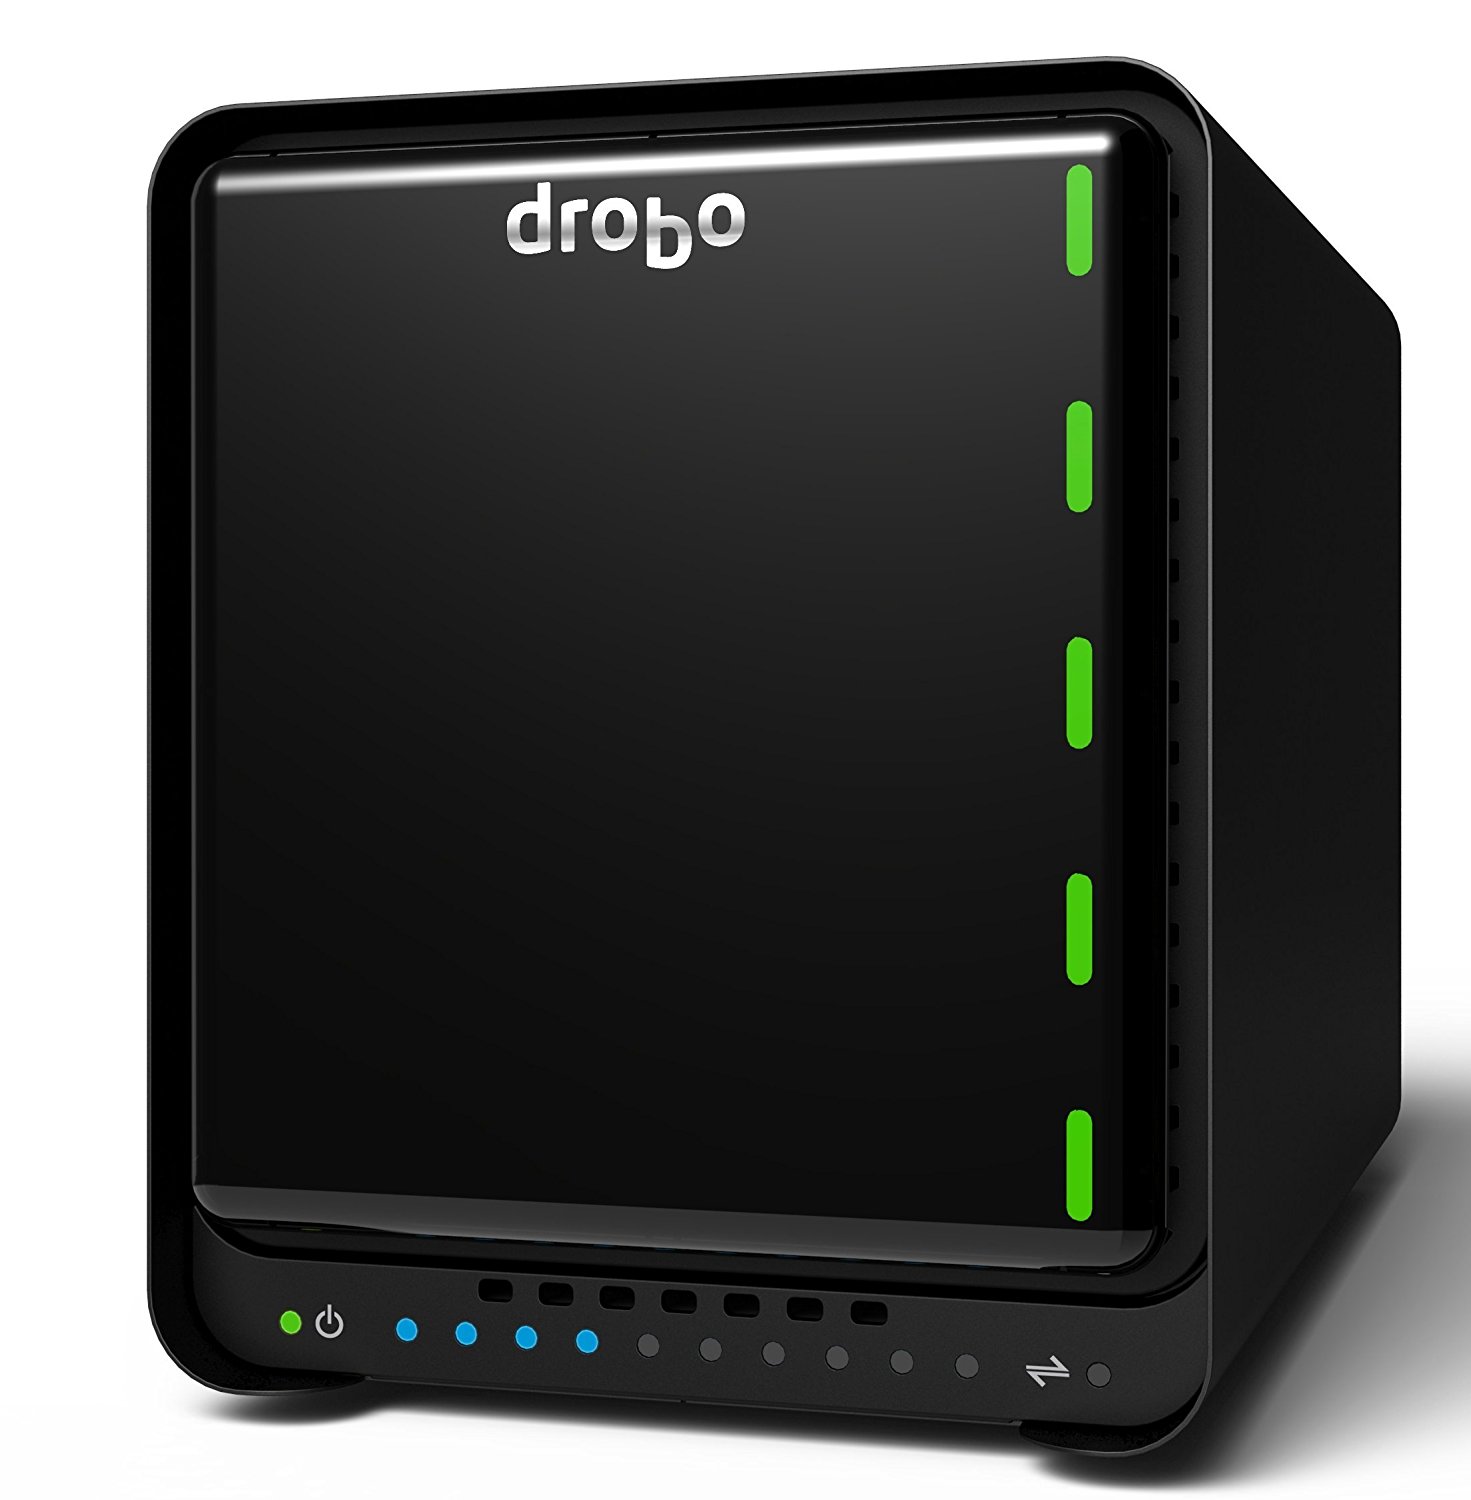  PC- Drobo direct Drobo 5D3 5-дисковый массив устройств хранения данных с прямым подключением (DAS) - два порта Thunderbolt 3 и USB 3.0...